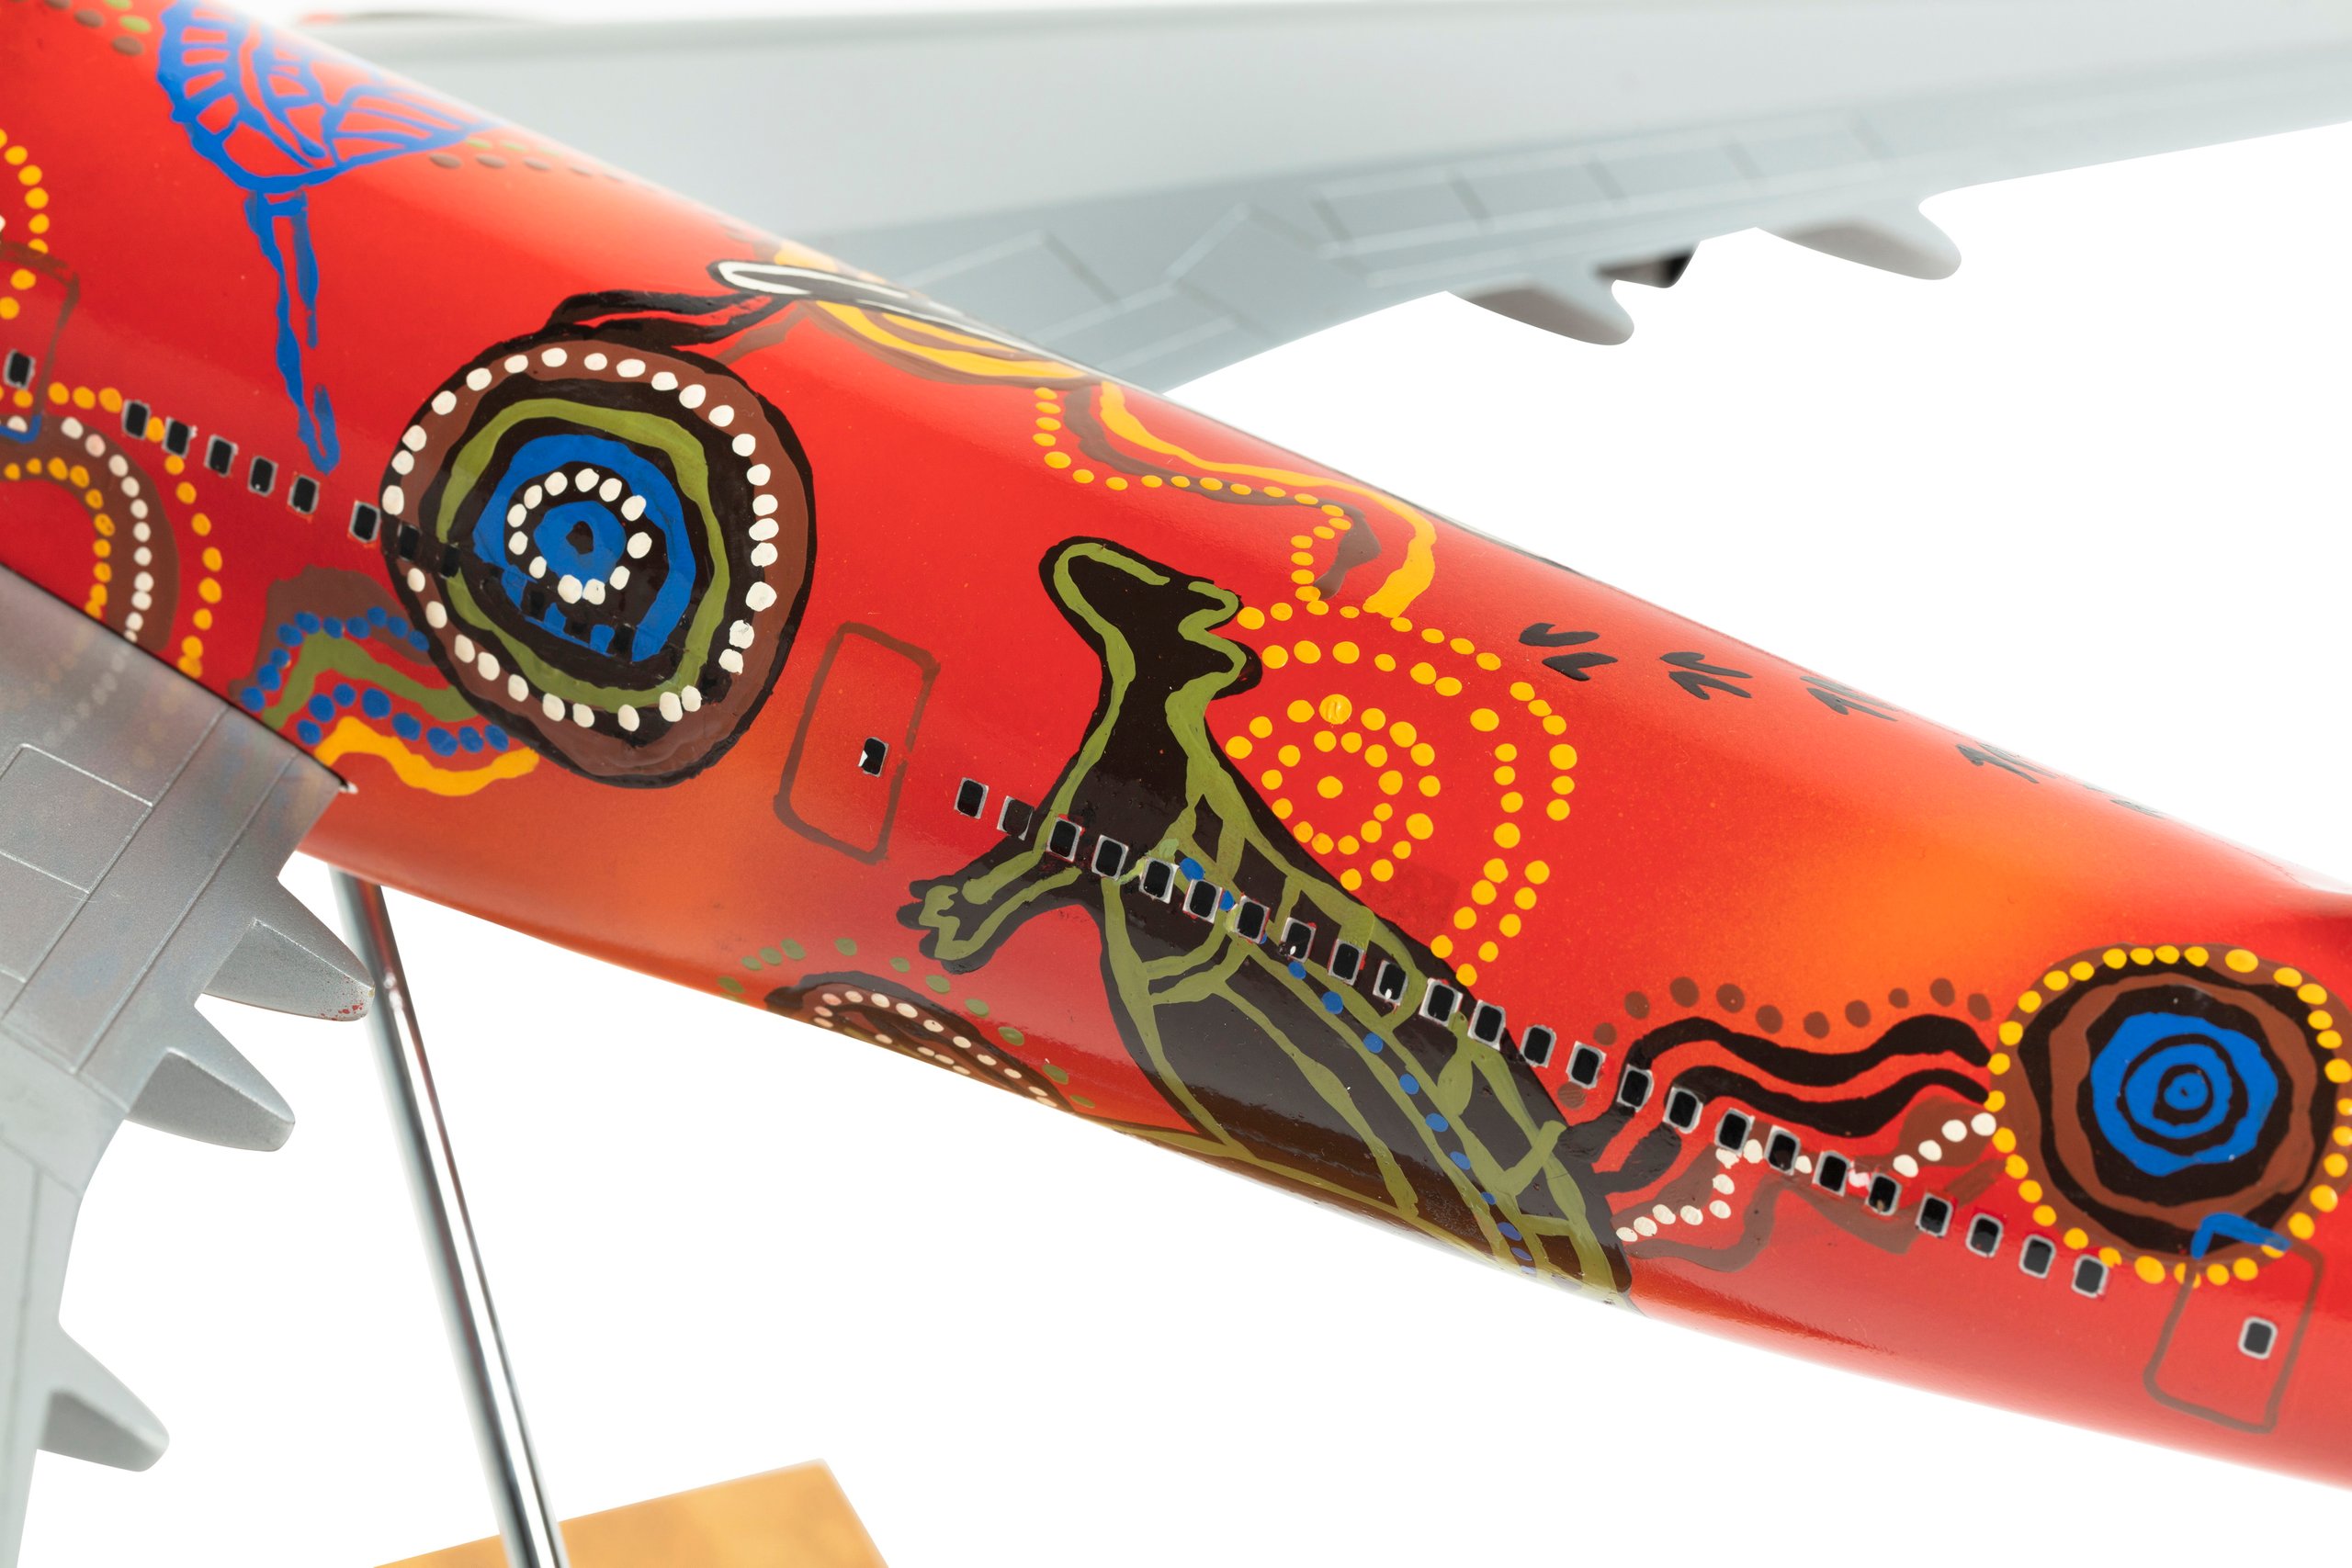 'Wunala Dreaming' decorated aircraft model and print by Balarinji Studio